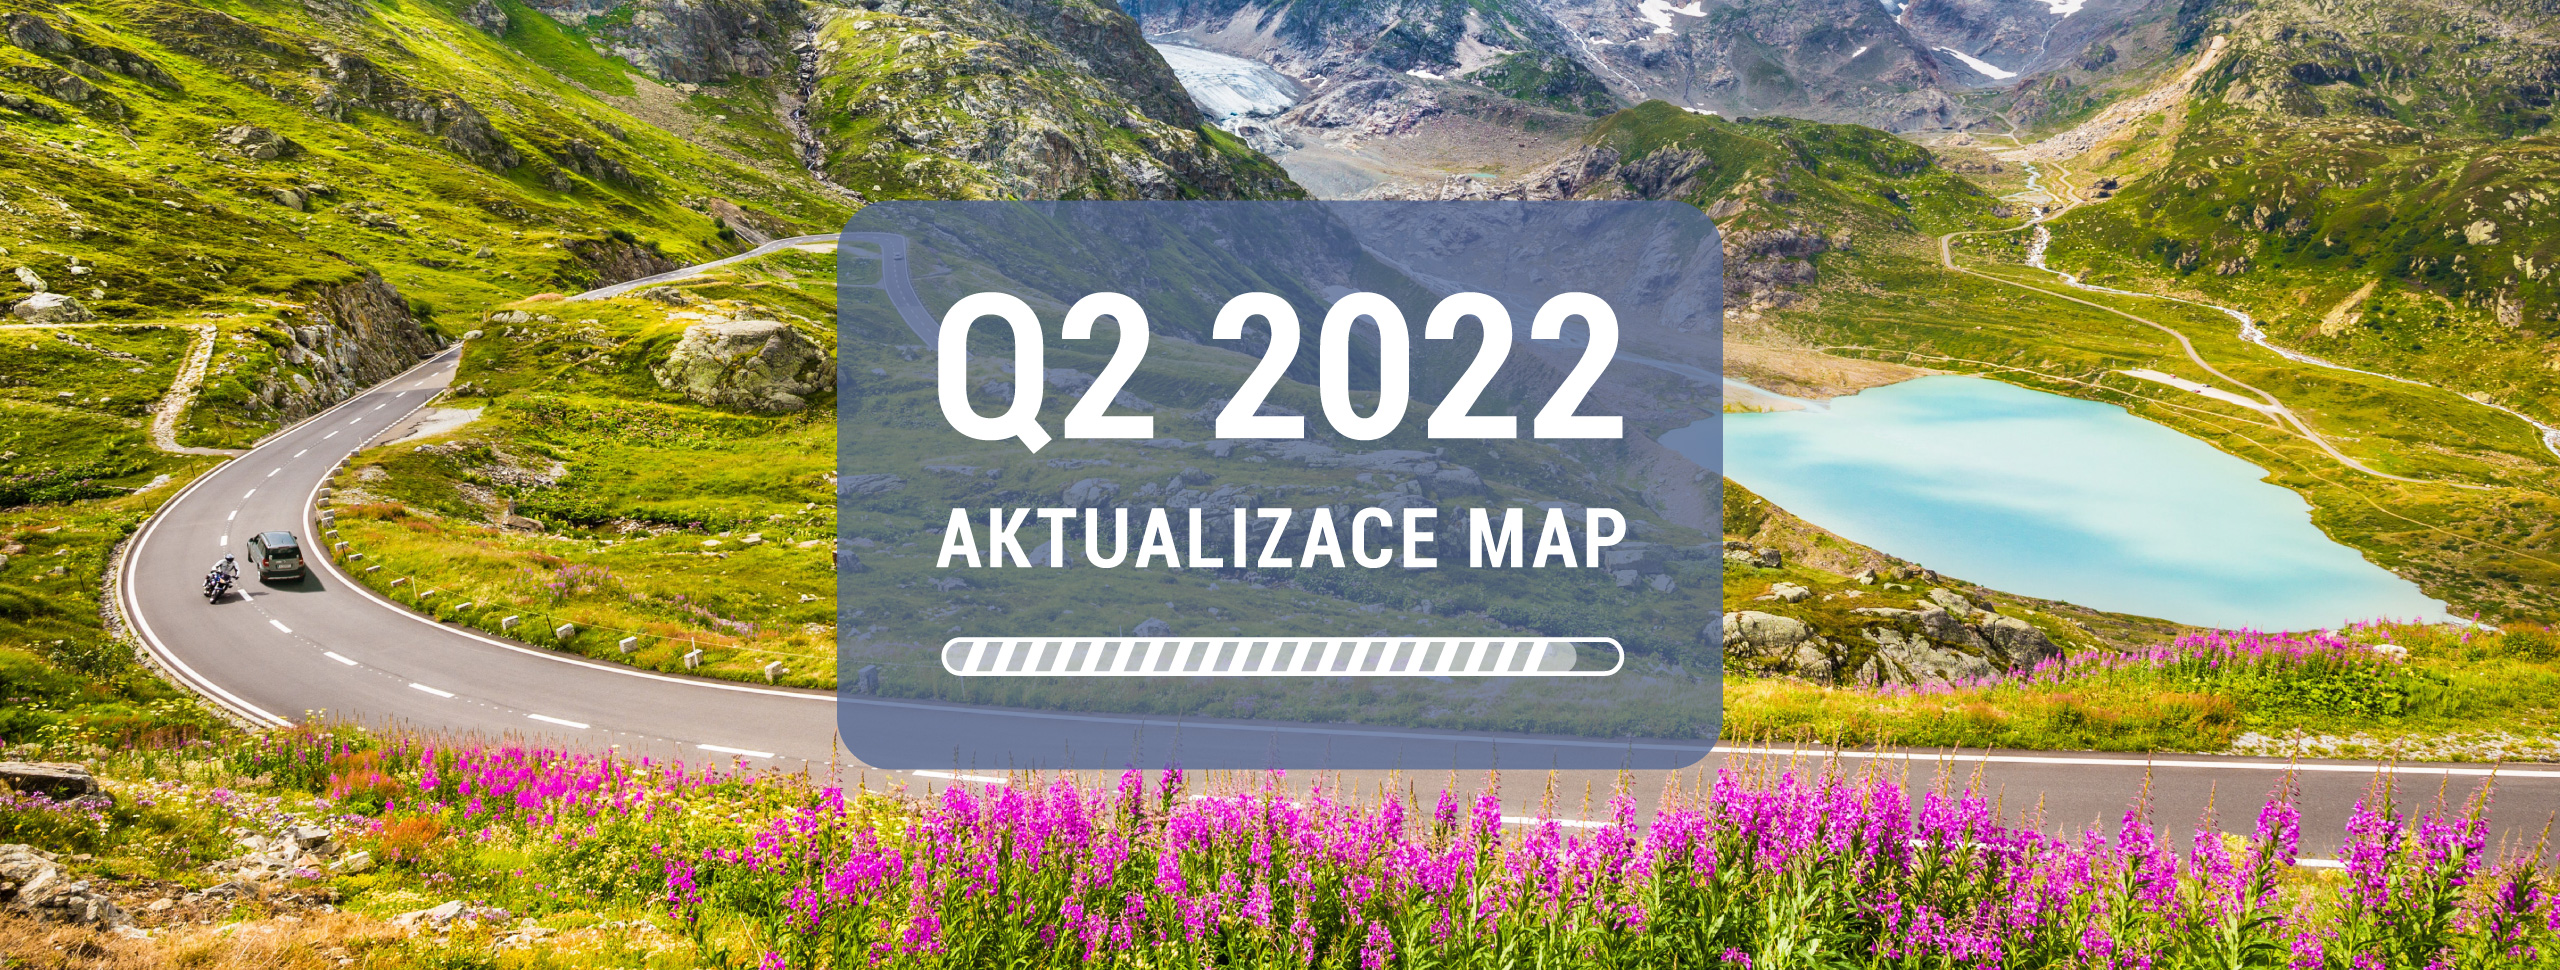 Vydává aktualizaci pro všechny mapy - verze Q2 2022